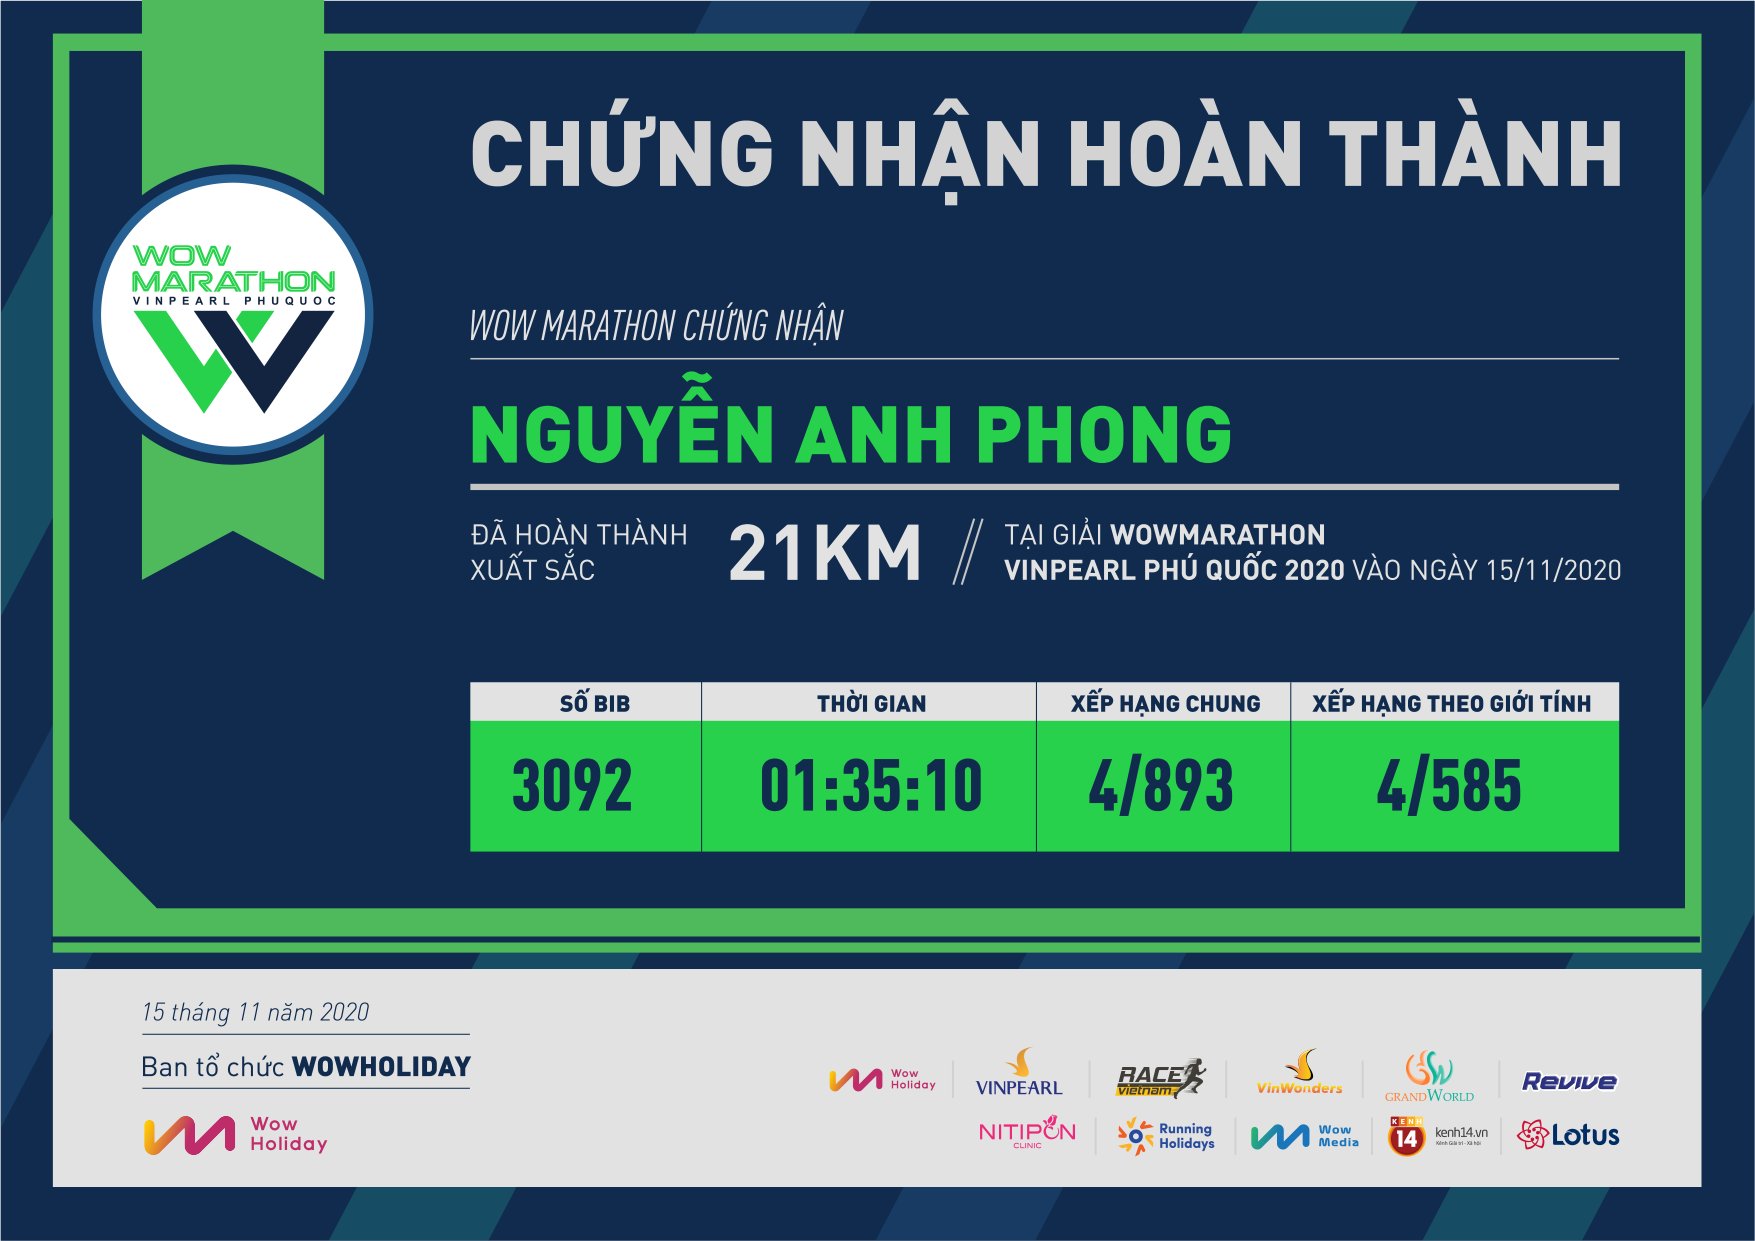 3092 - Nguyễn Anh Phong